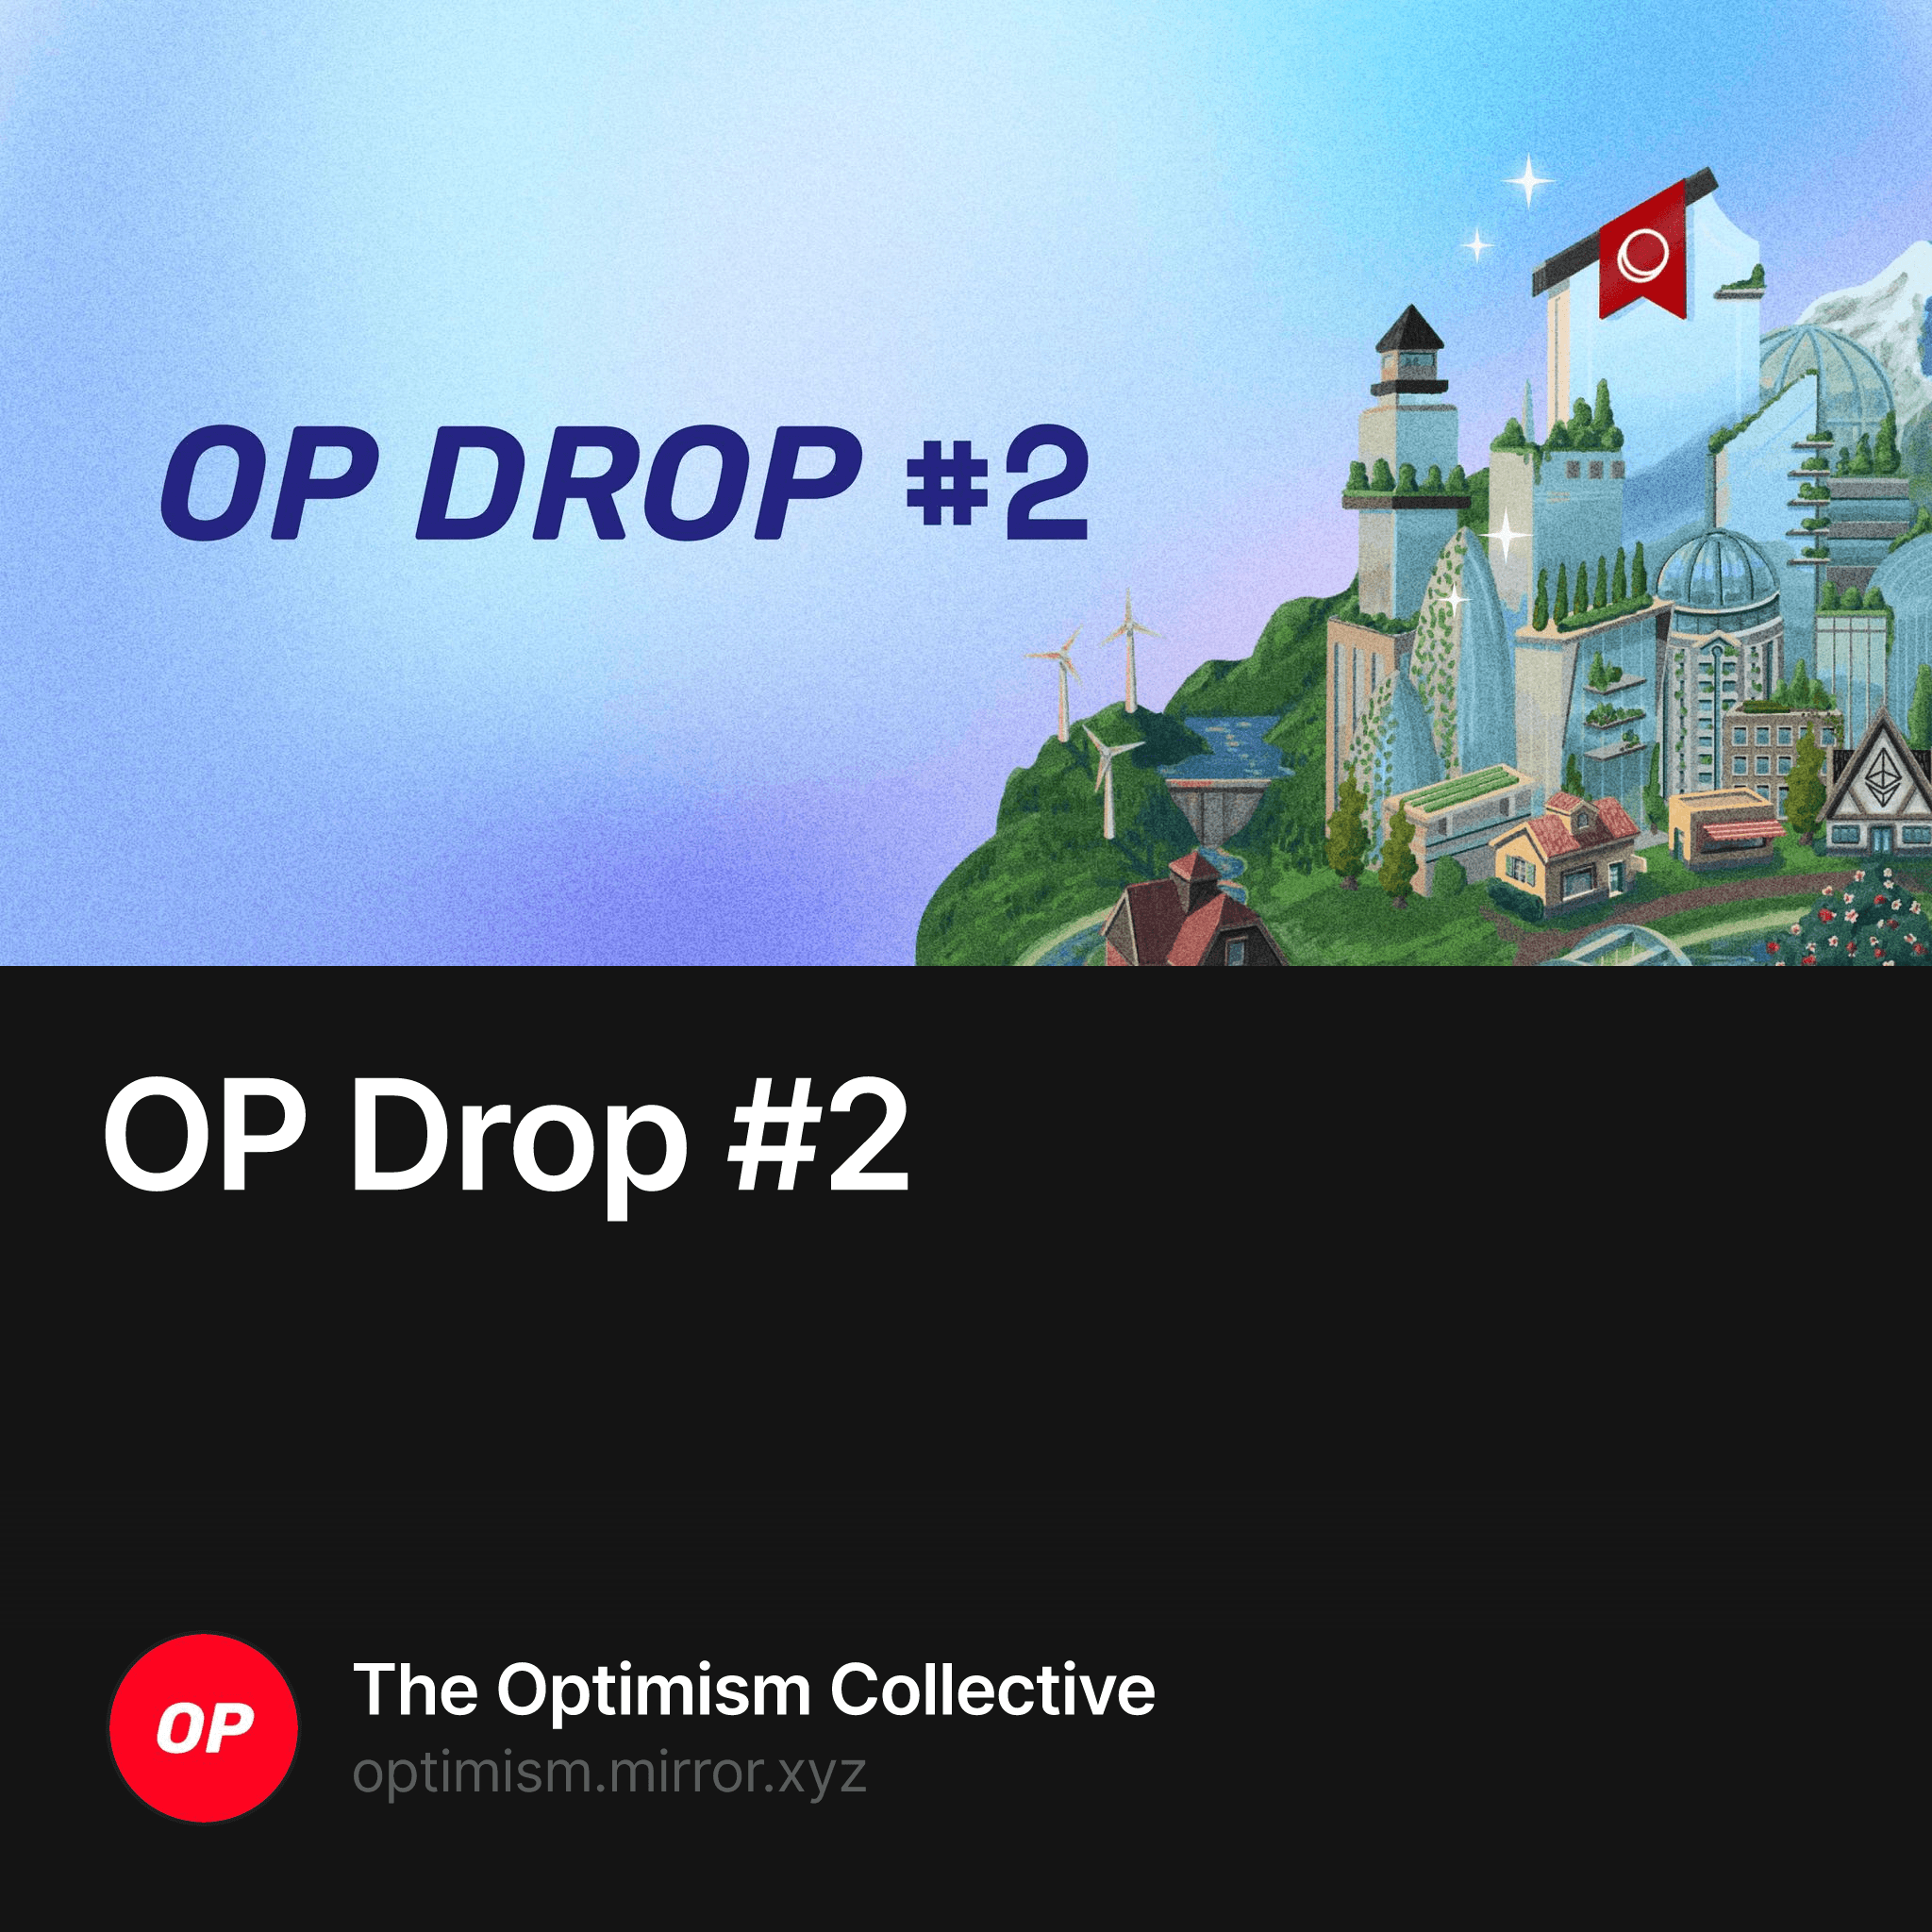 OP Drop #2 454/10000